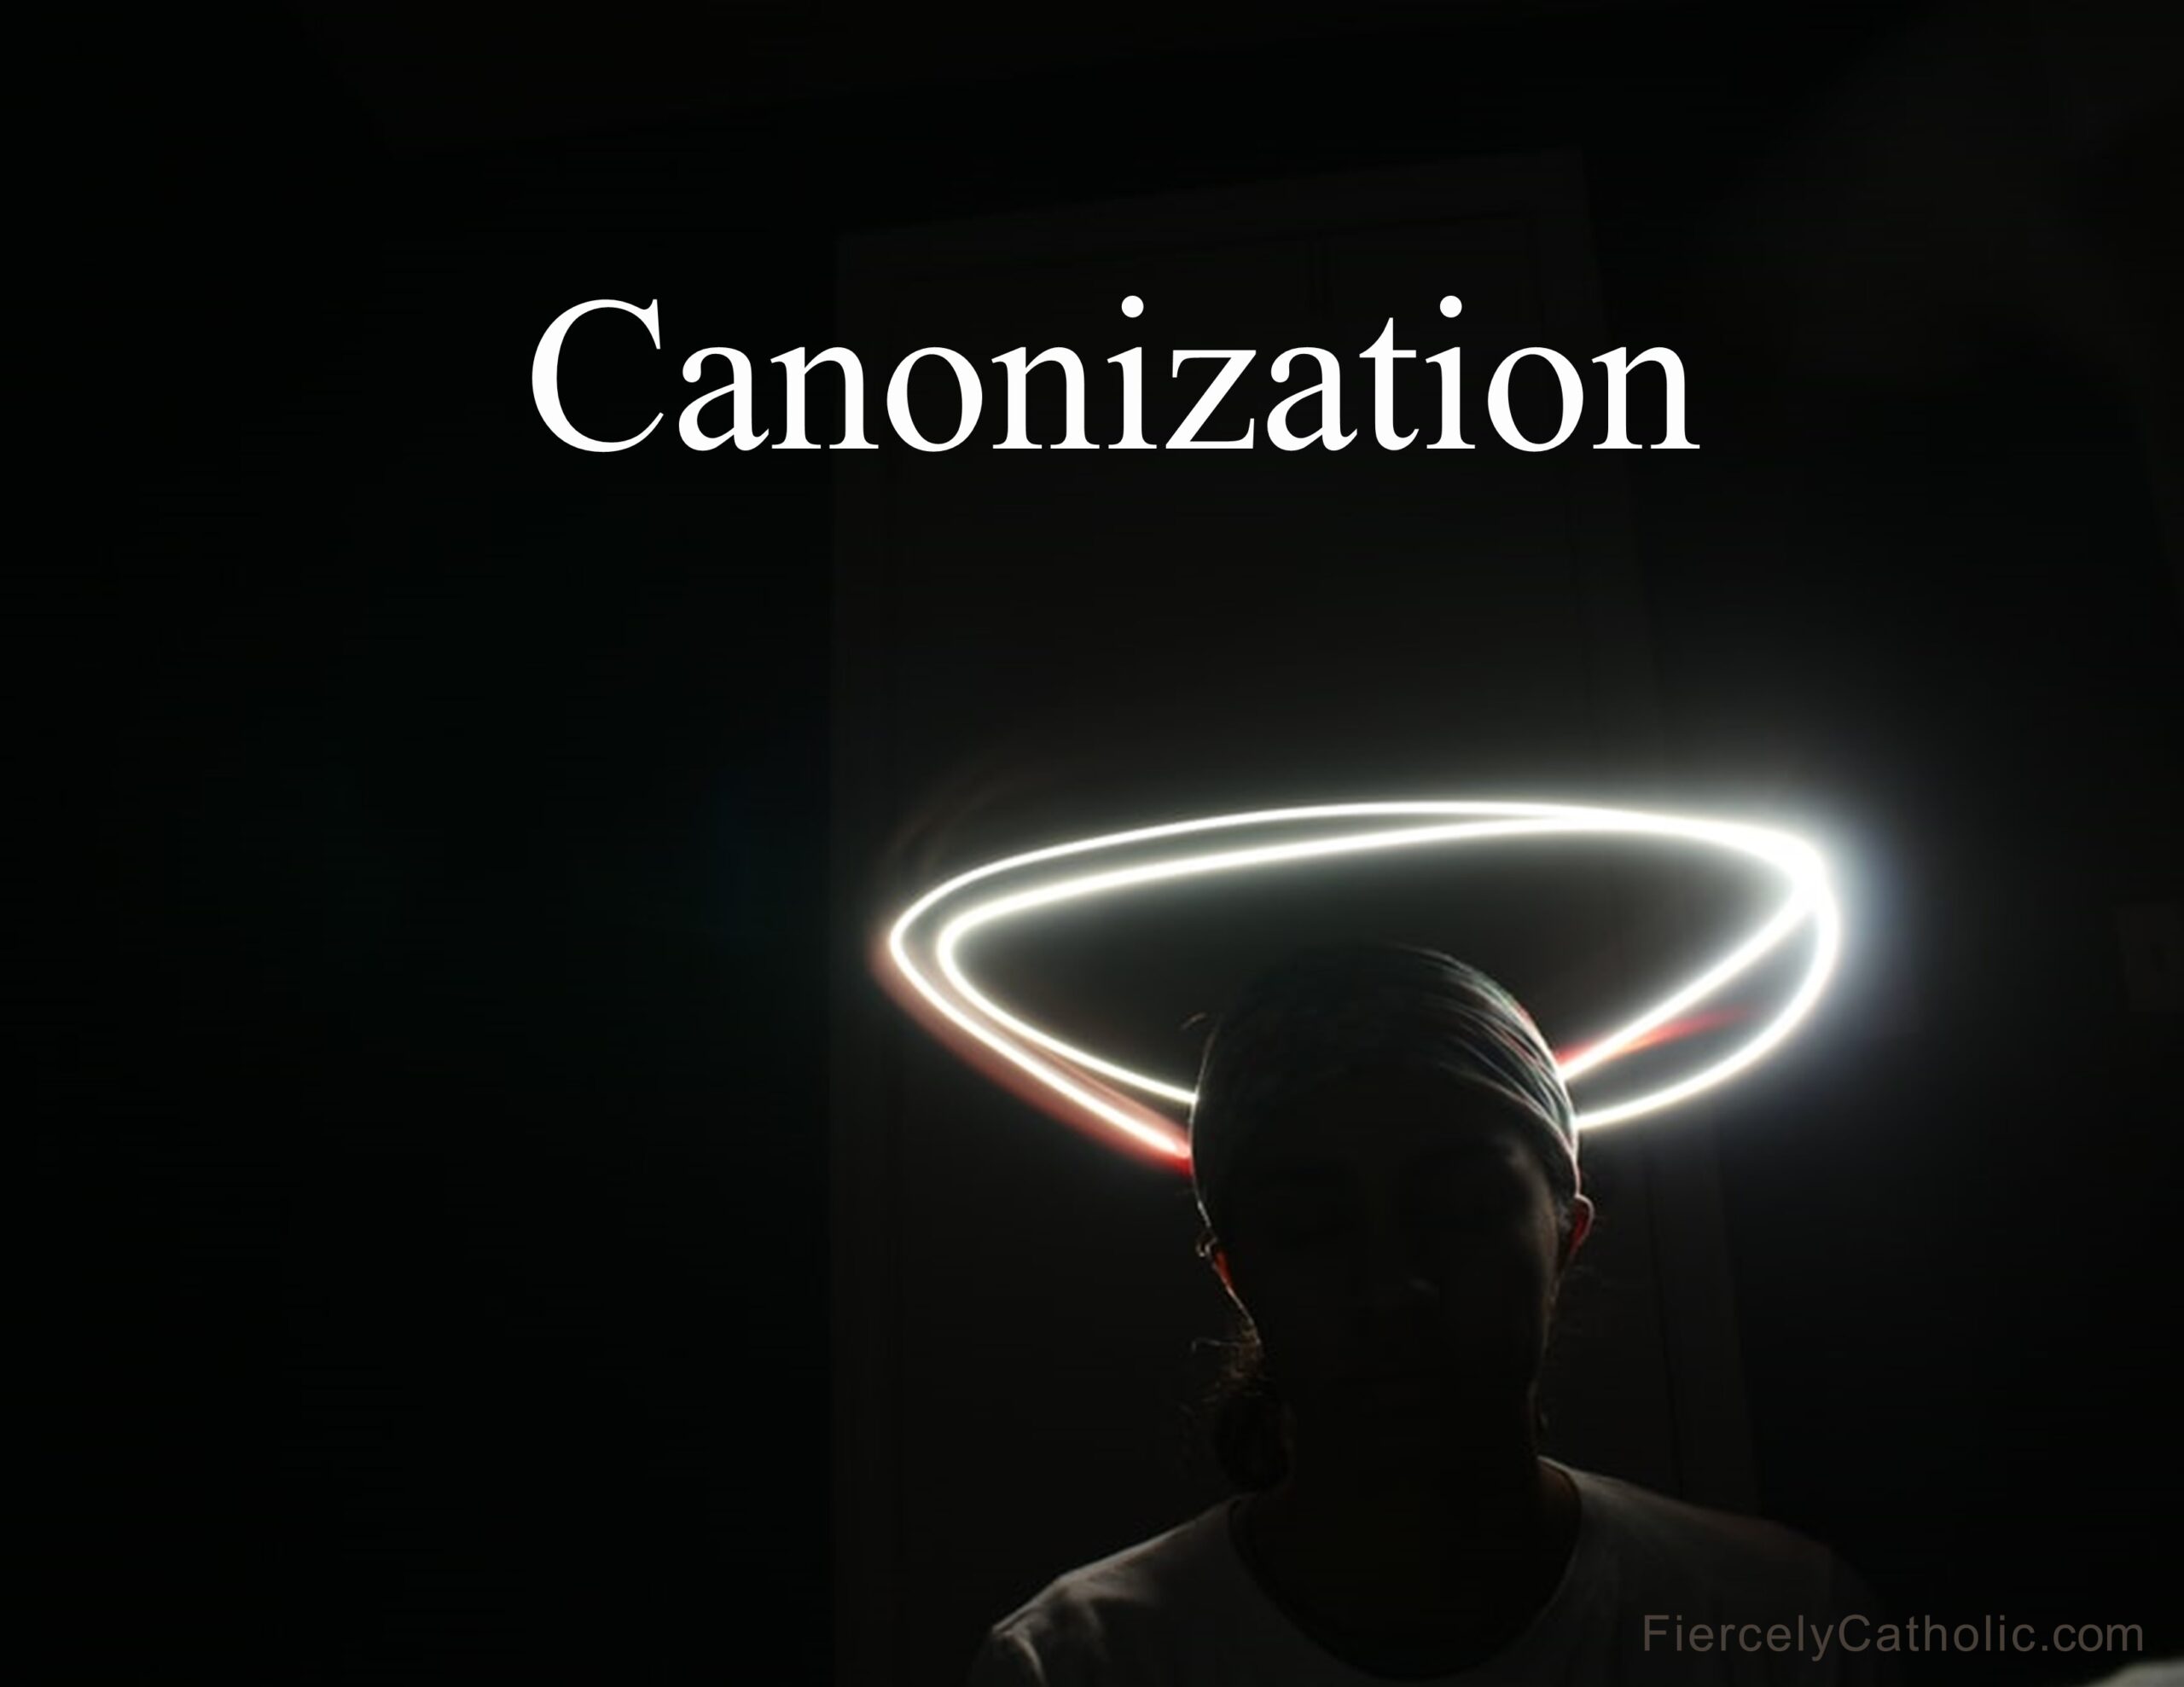 Canonization